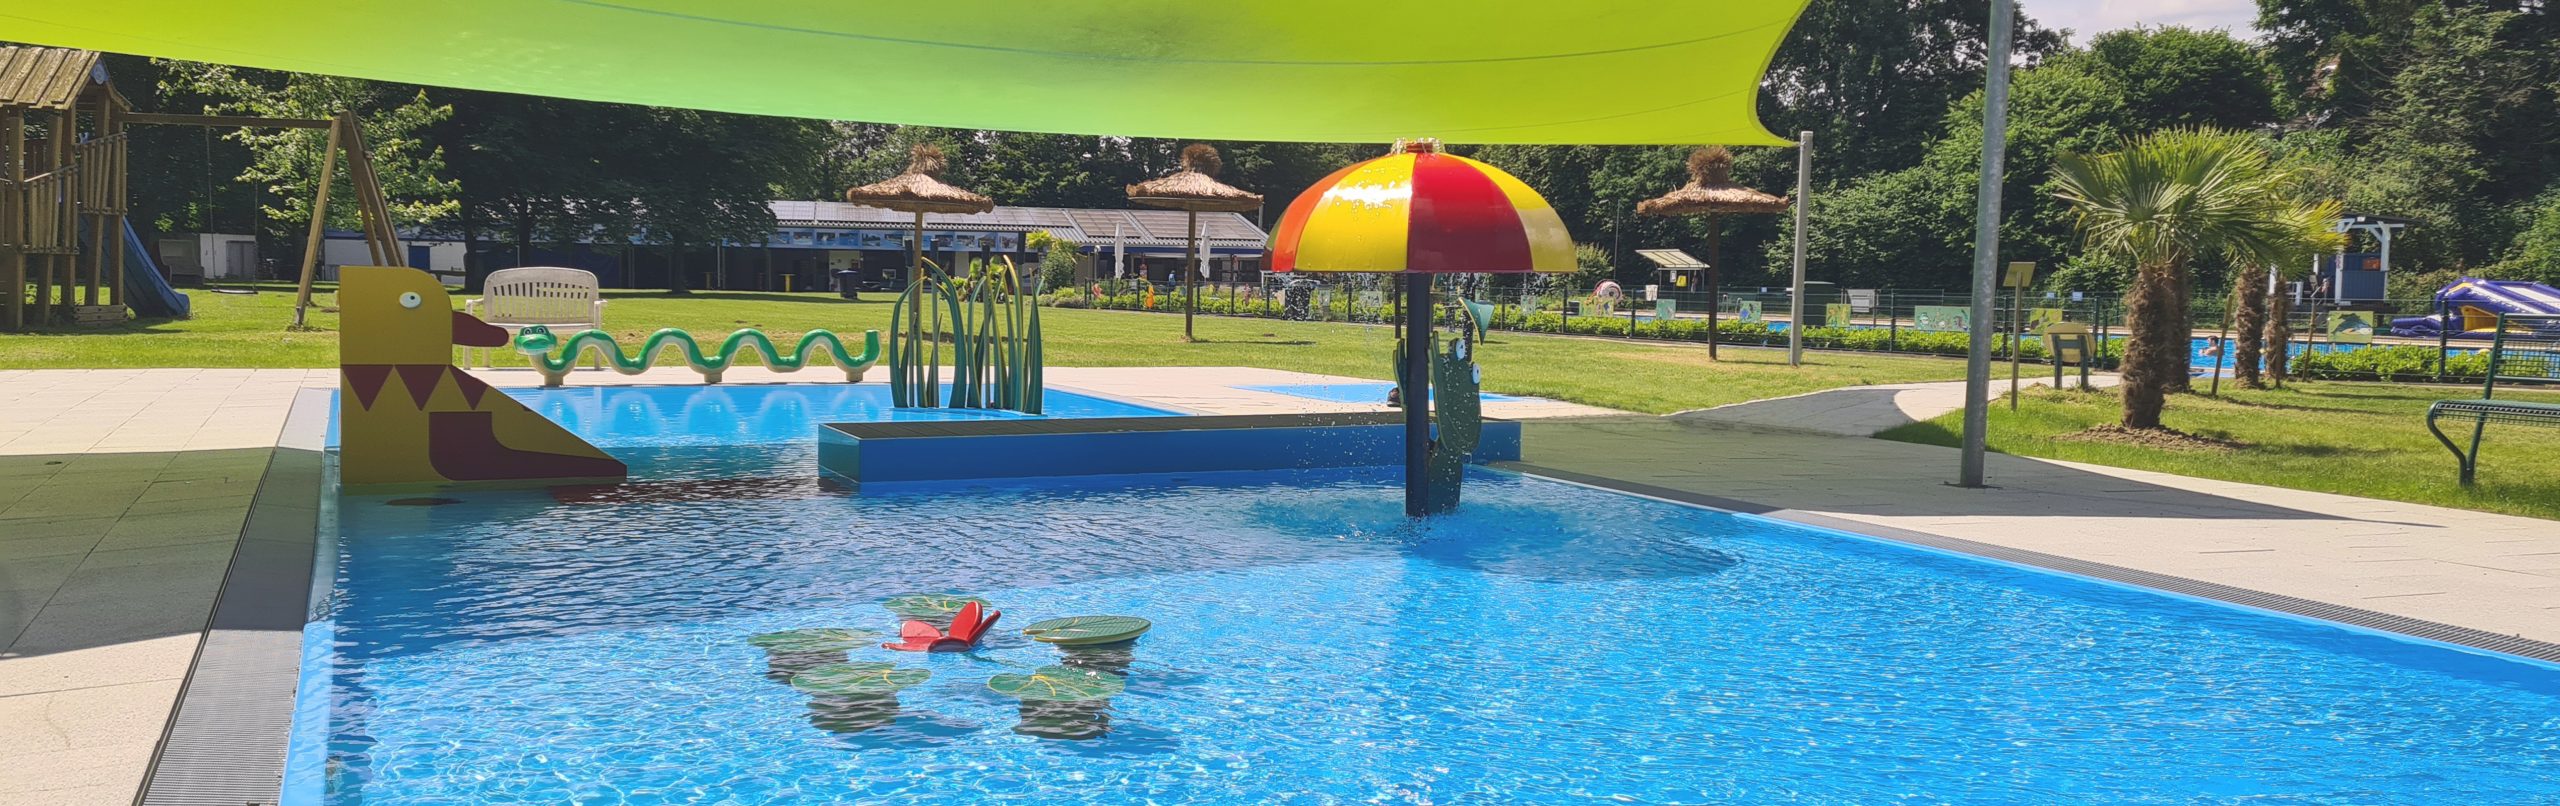 Wasserspielwelt Seerosenteich ein pflegeleichtes Kinderschwimmbecken ohne Schwermetalle